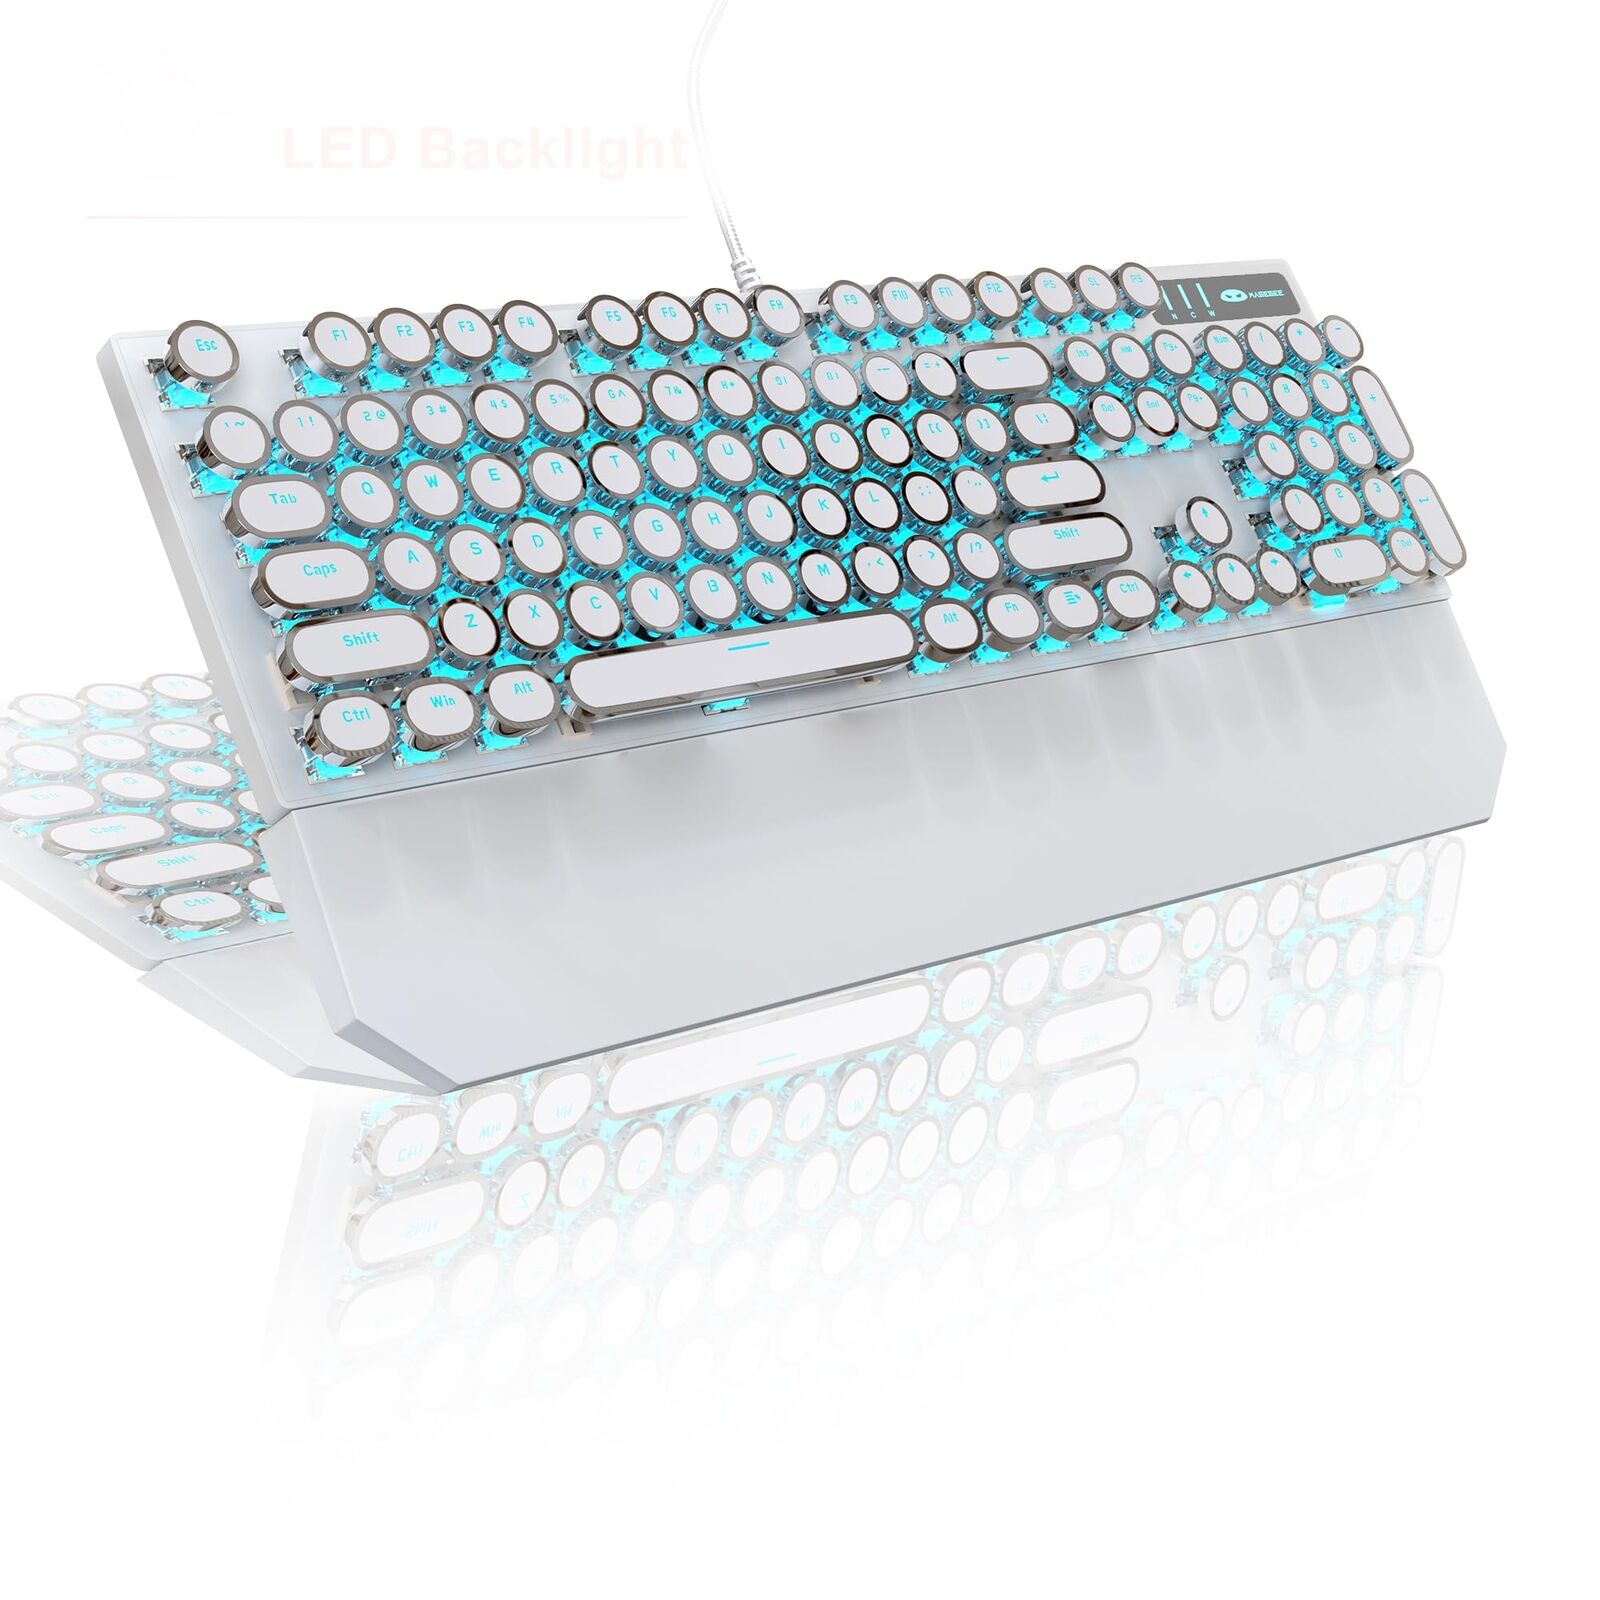 MageGee Typewriter Mechanical Gaming Keyboard, Retro Punk Round Keycap LED Backl